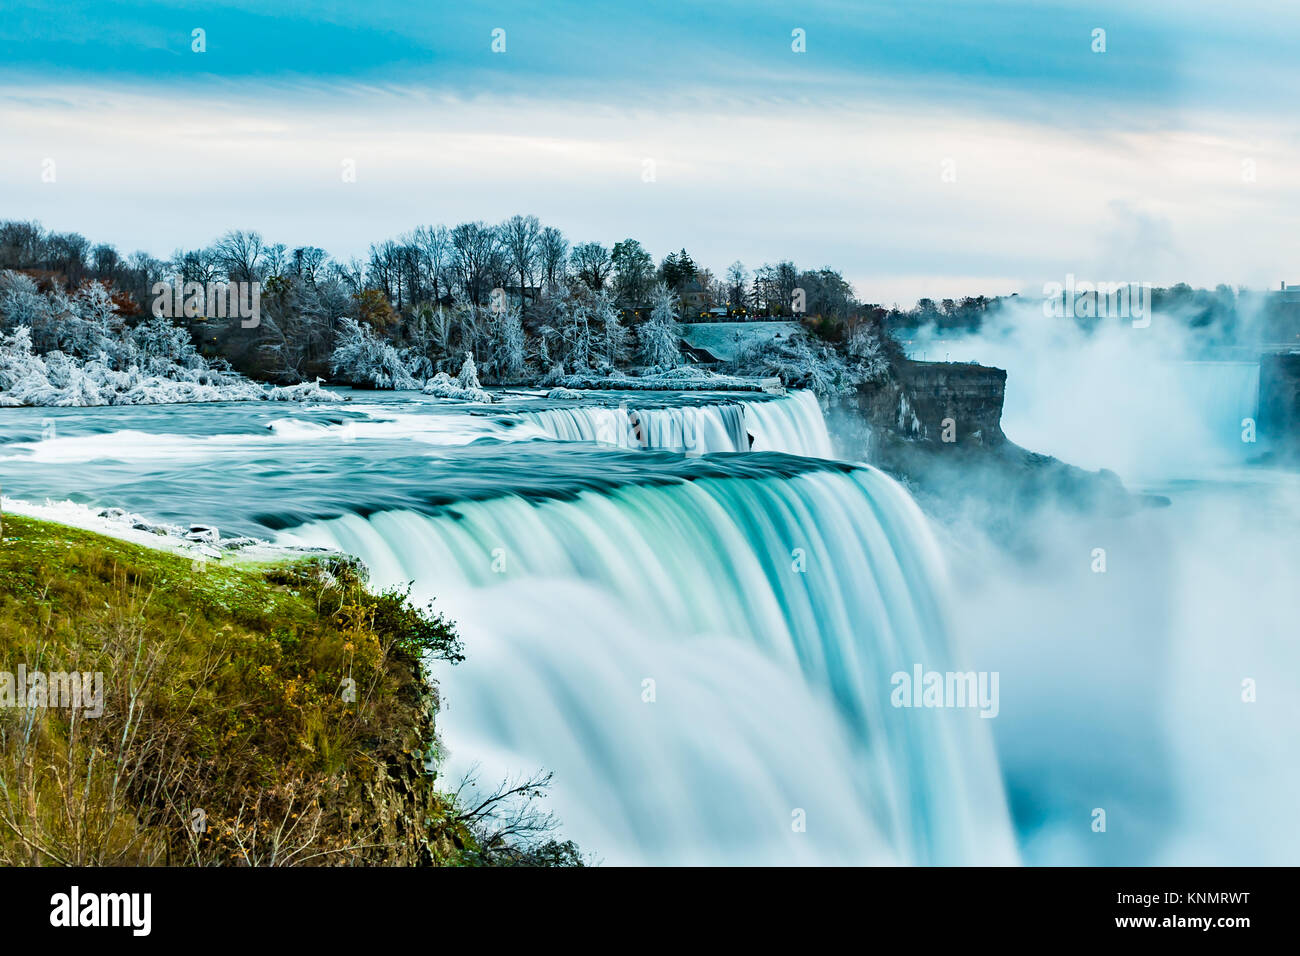 Niagara Falls after an ice storm Stock Photo